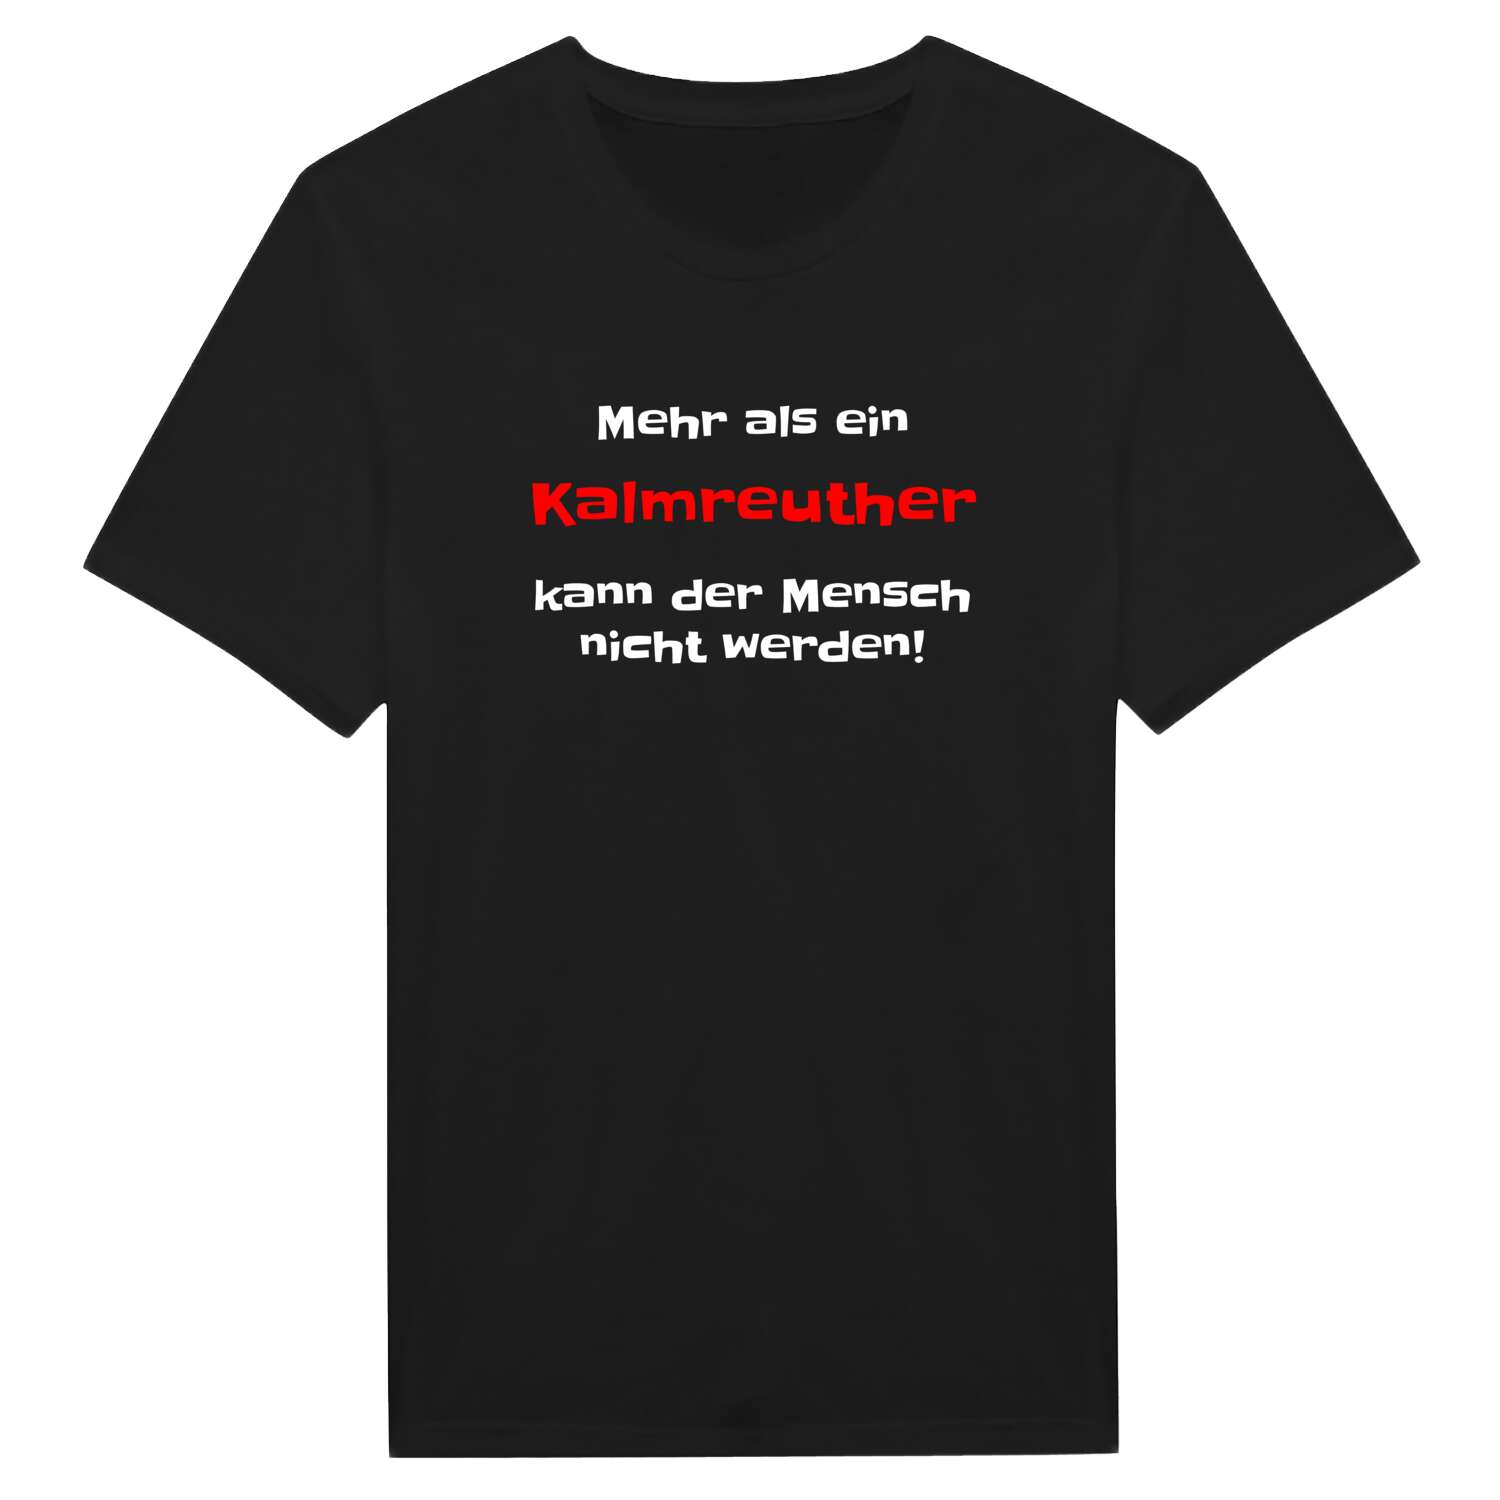 Kalmreuth T-Shirt »Mehr als ein«